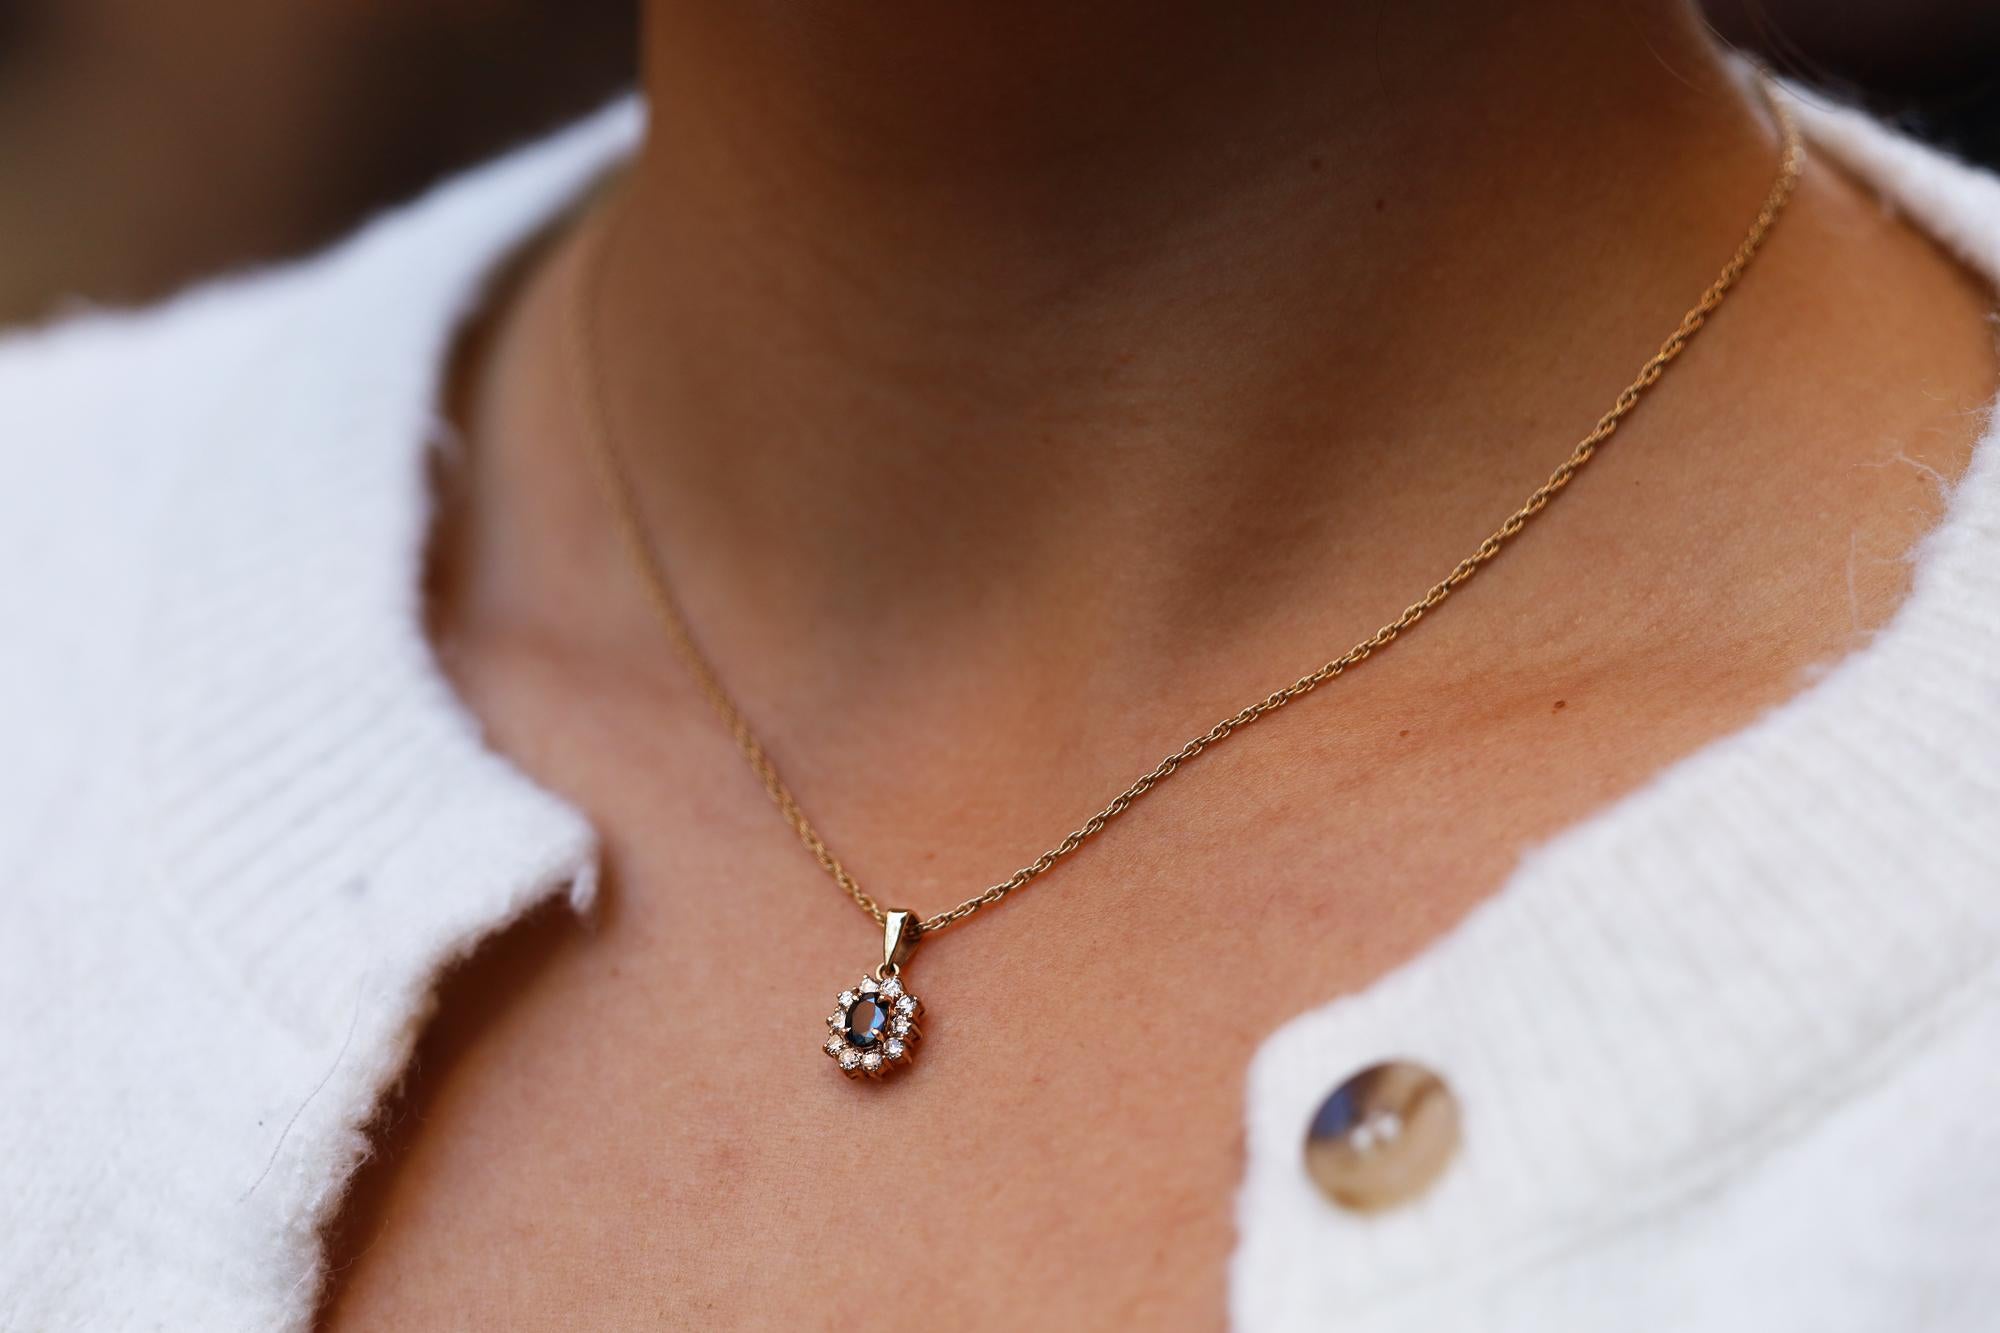 Vintage et abordable, ce collier estate est un pendentif parfait pour tous les jours. Un saphir ovale bleu nuit pesant 0,48 carat, entouré de 10 diamants ronds étincelants, constitue le cœur de ce design/One toujours très populaire. Réalisé en or